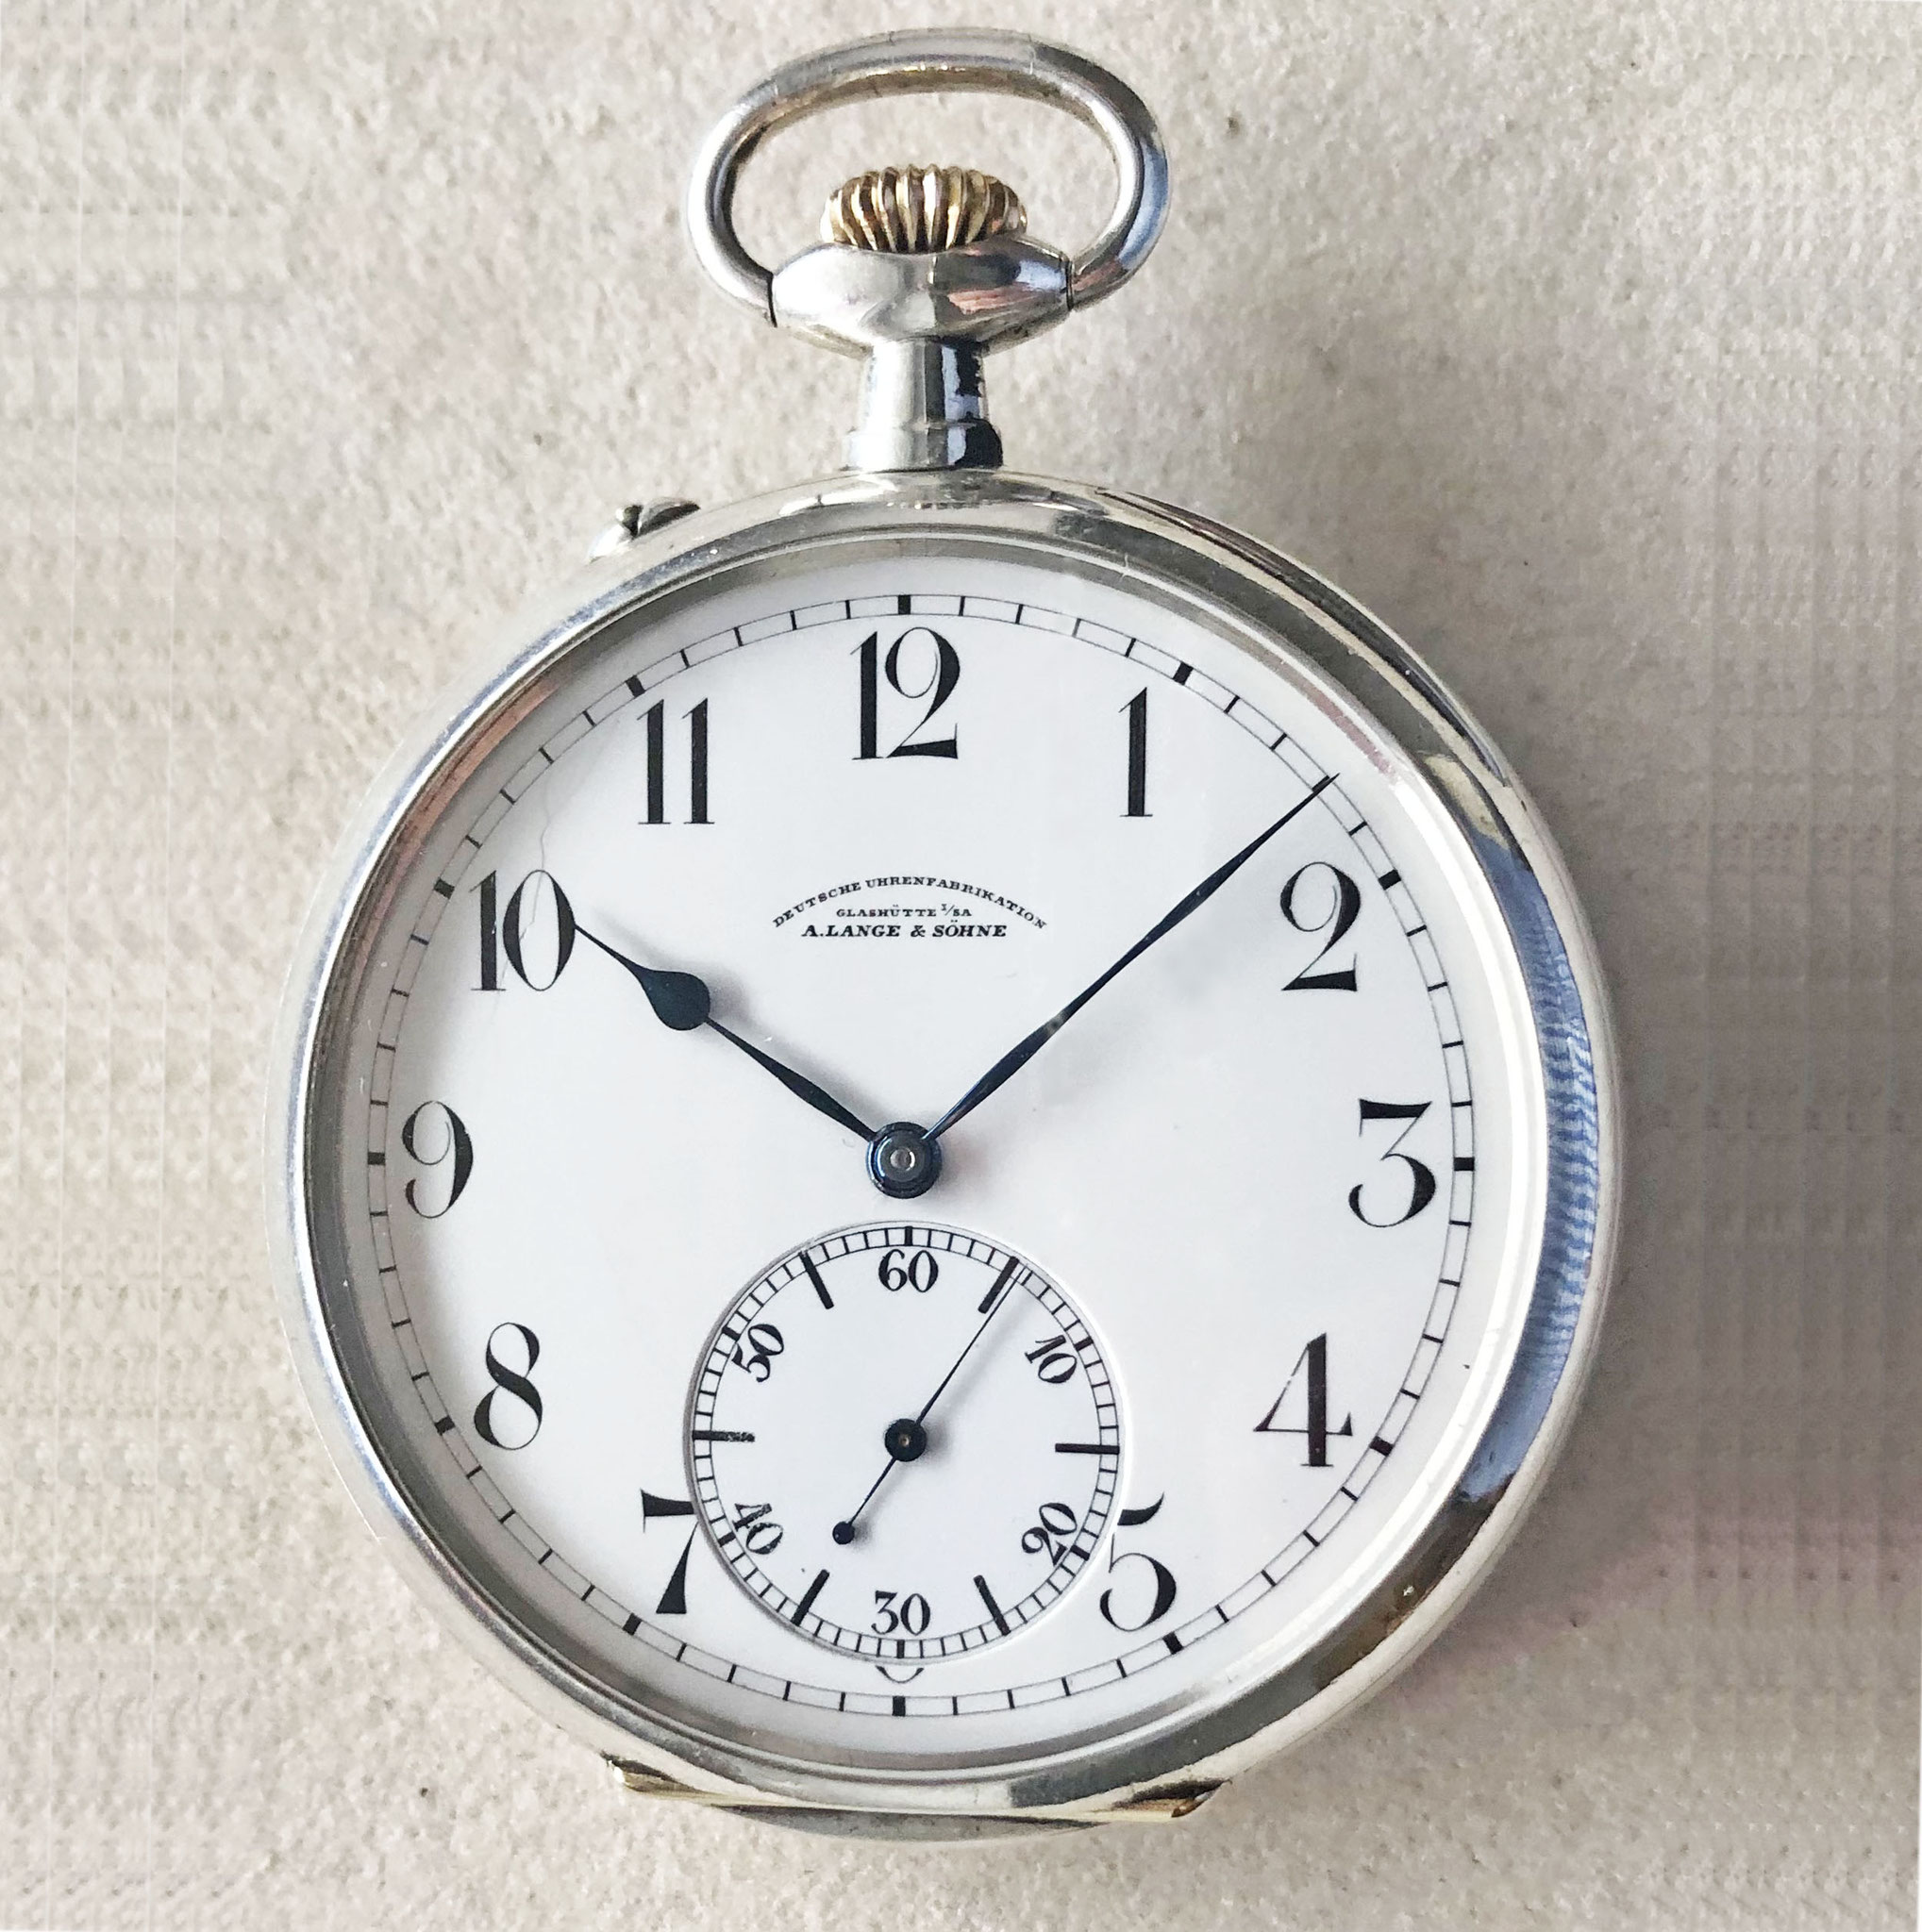 Fertigungszeit dieser B-Uhrenvariante war von 1937-1942